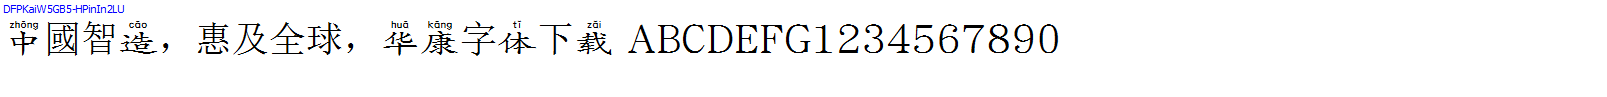 華康字體DFPKaiW5GB5-HPinIn2LU.TTF